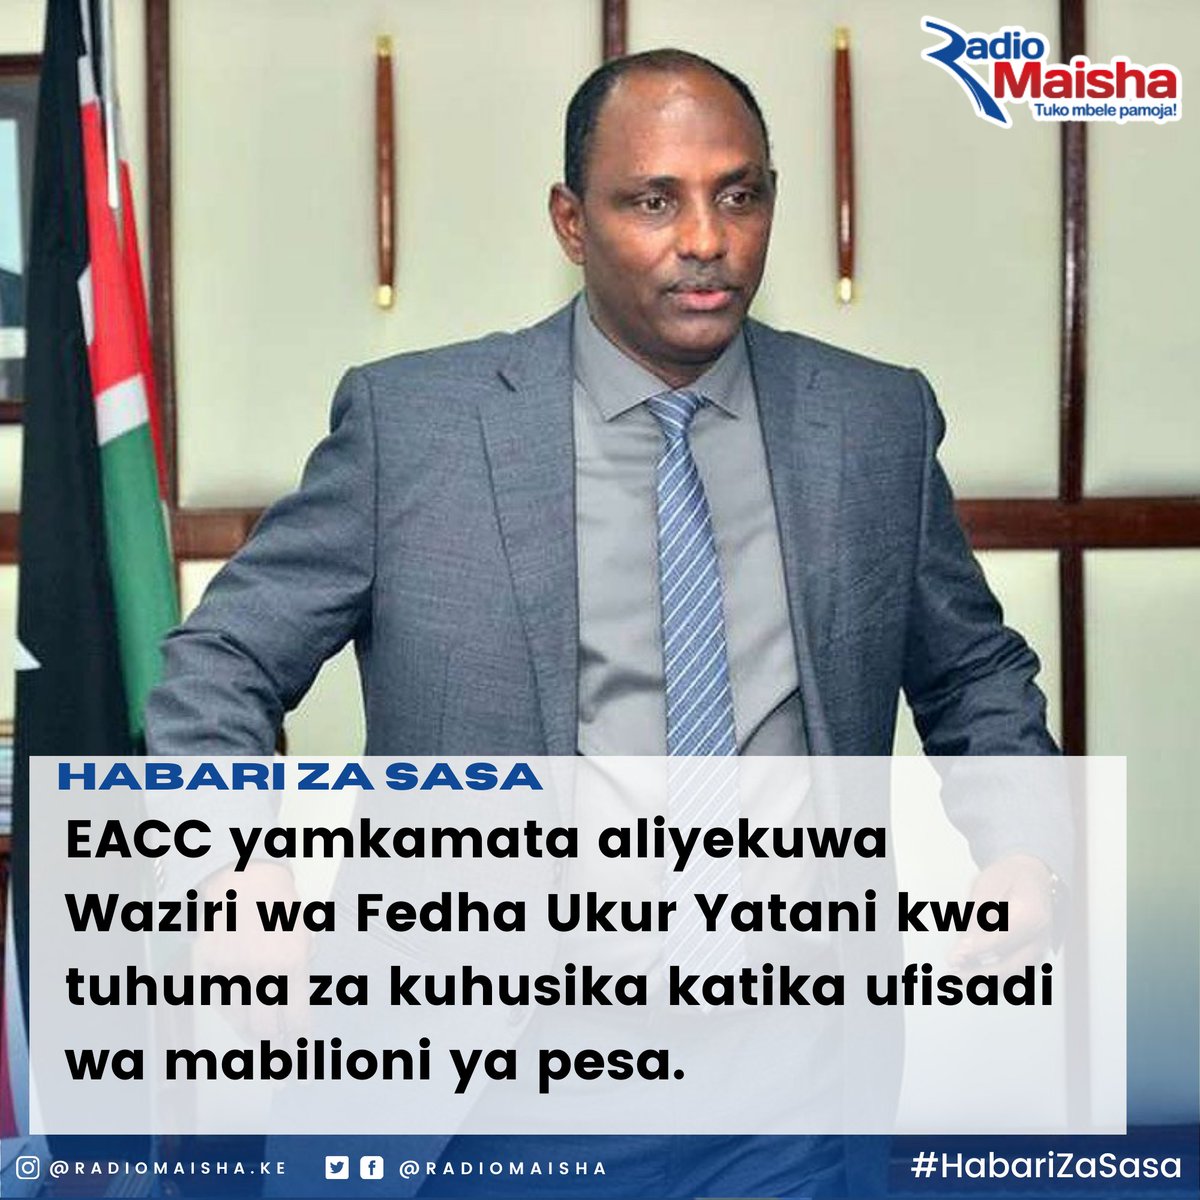 #HabariZaSasa
Aliyekuwa Waziri wa Fedha Ukur Yatani amekamatwa na EACC kwa tuhuma za kuhusika katika ufisadi wa mabilioni ya pesa.
#MaishaNiBoraZaidi
#RadioZaidiYaRadio
#Staarabika